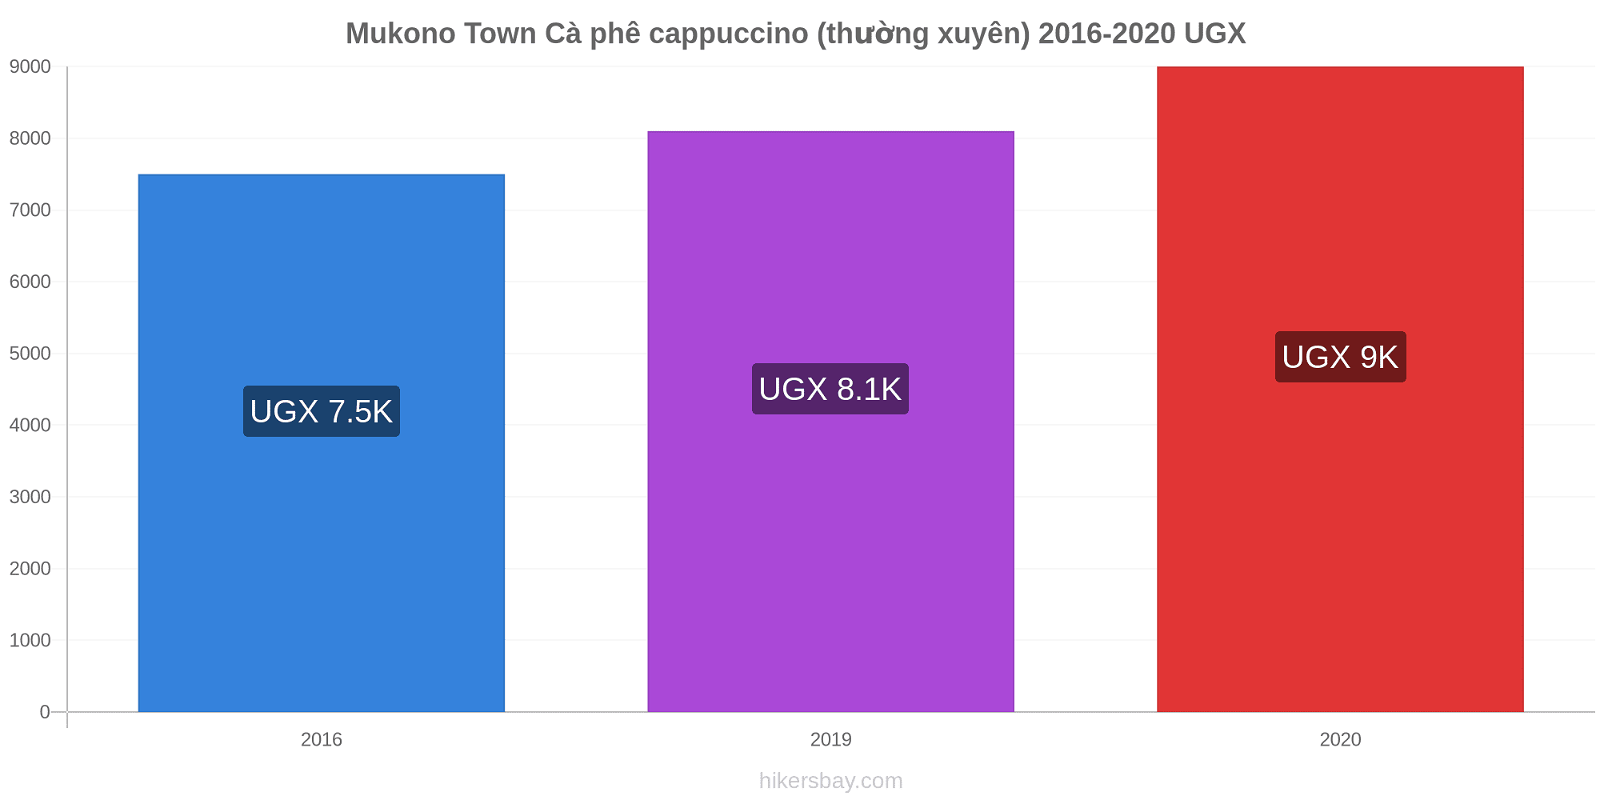 Mukono Town thay đổi giá Cà phê cappuccino (thường xuyên) hikersbay.com